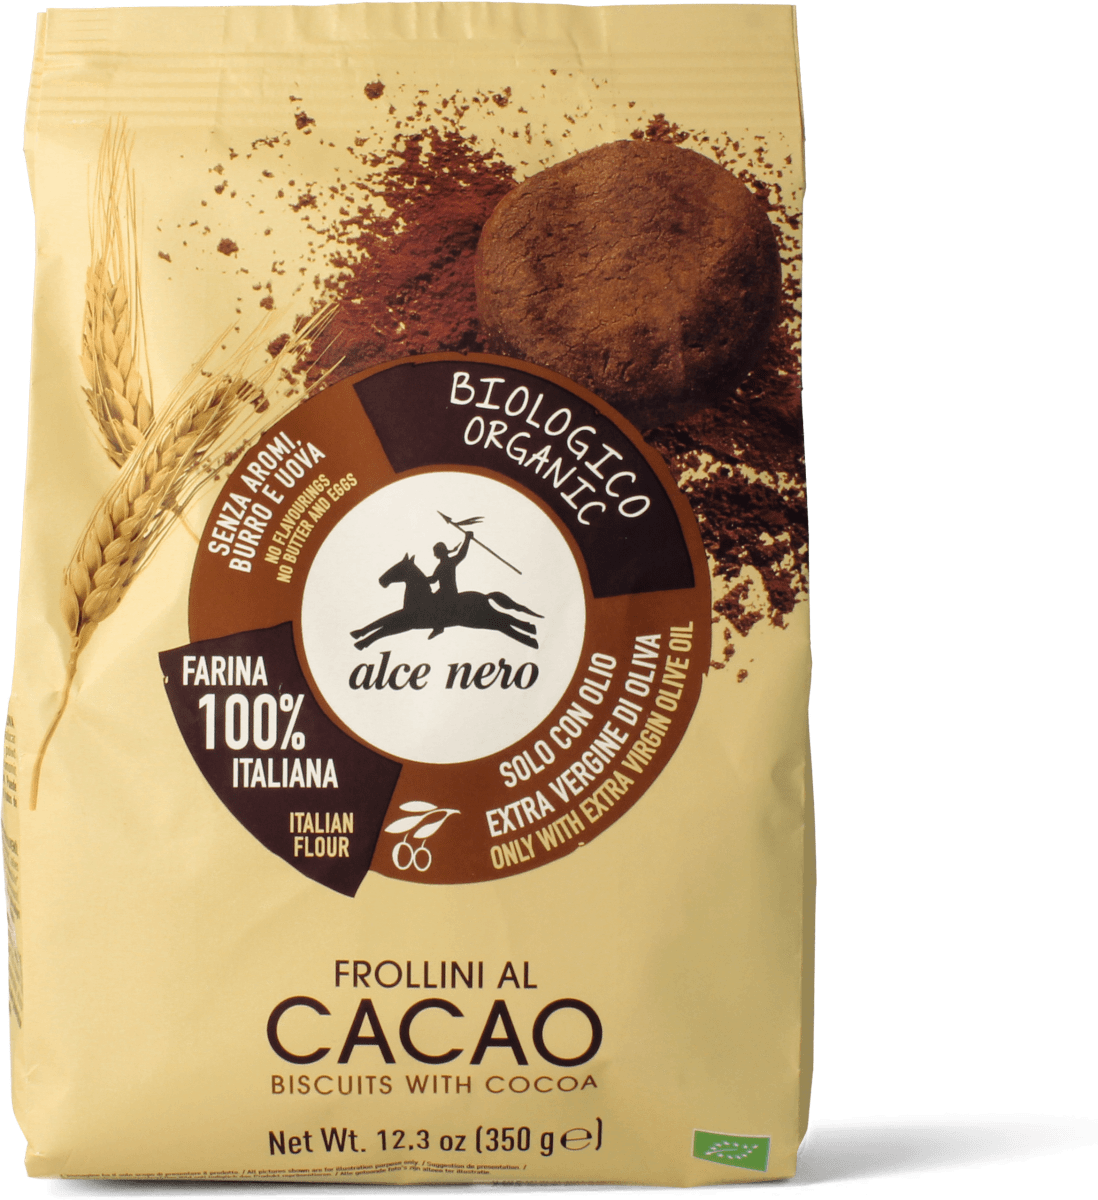 alce nero Frollini al cacao, 350 g Acquisti online sempre